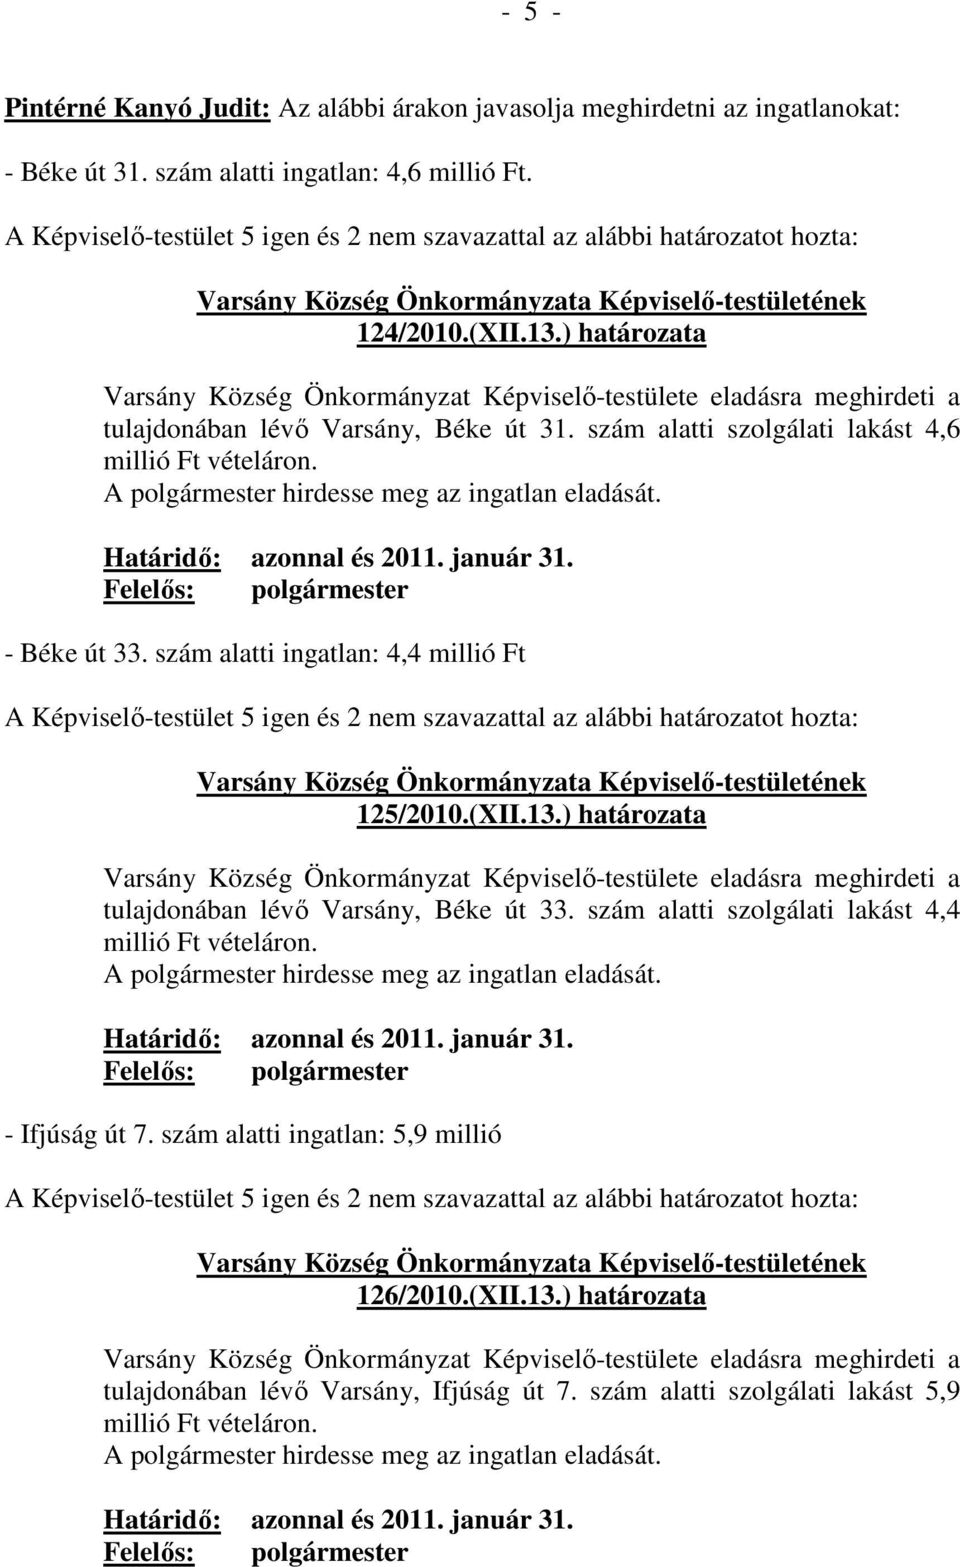 ) határozata Varsány Község Önkormányzat Képviselı-testülete eladásra meghirdeti a tulajdonában lévı Varsány, Béke út 31. szám alatti szolgálati lakást 4,6 millió Ft vételáron.